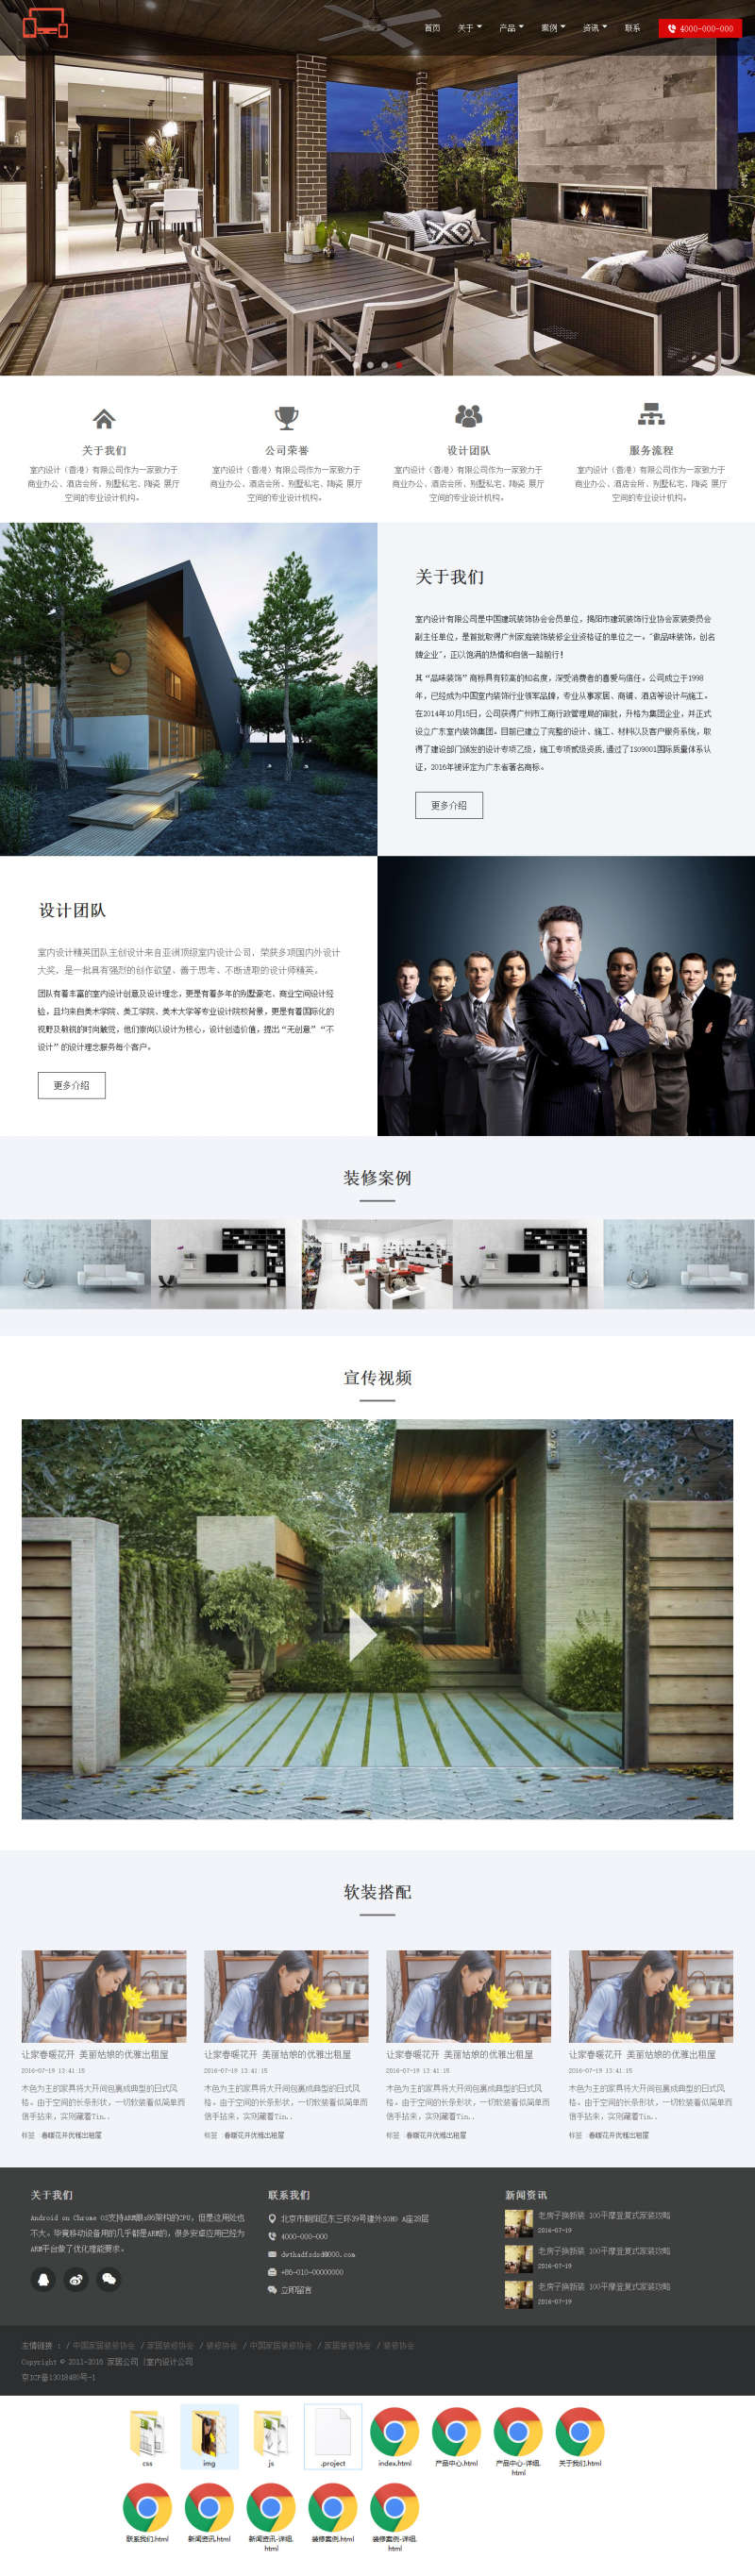 黑色大气的家居公司响应式html5网站模板